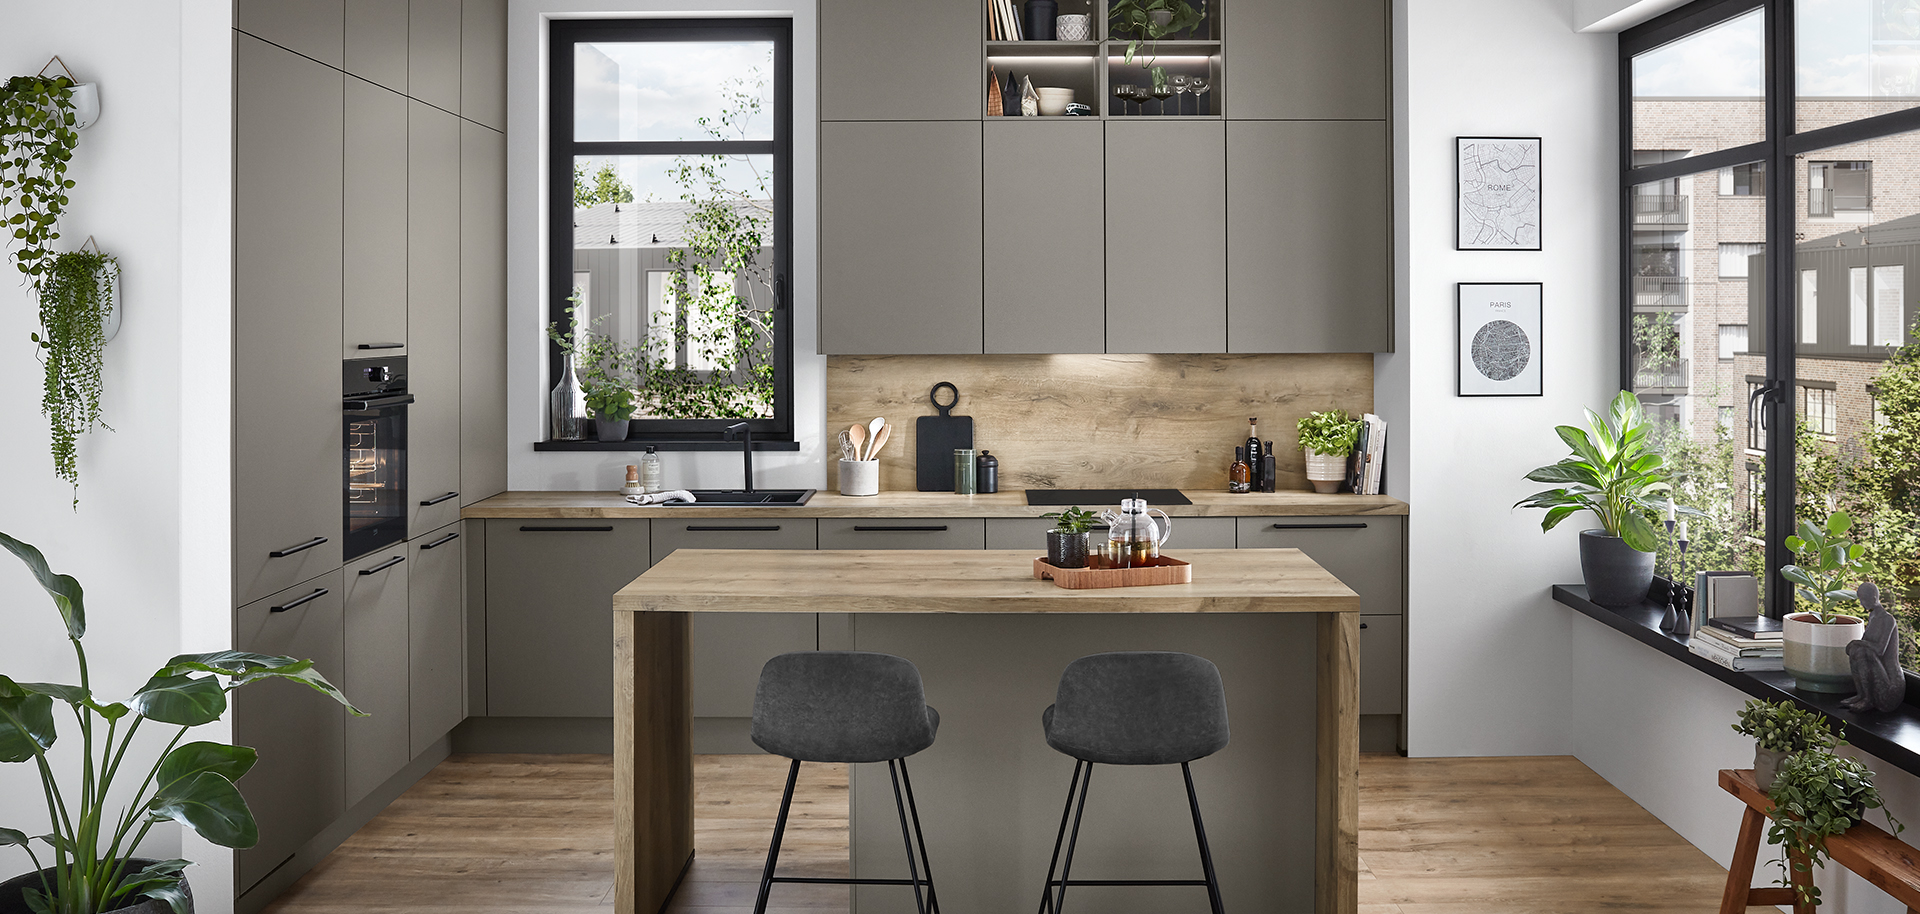 Diseño de cocina moderna con elegantes gabinetes grises, pisos de madera, una isla central con taburetes, y luz natural complementada por plantas de interior.